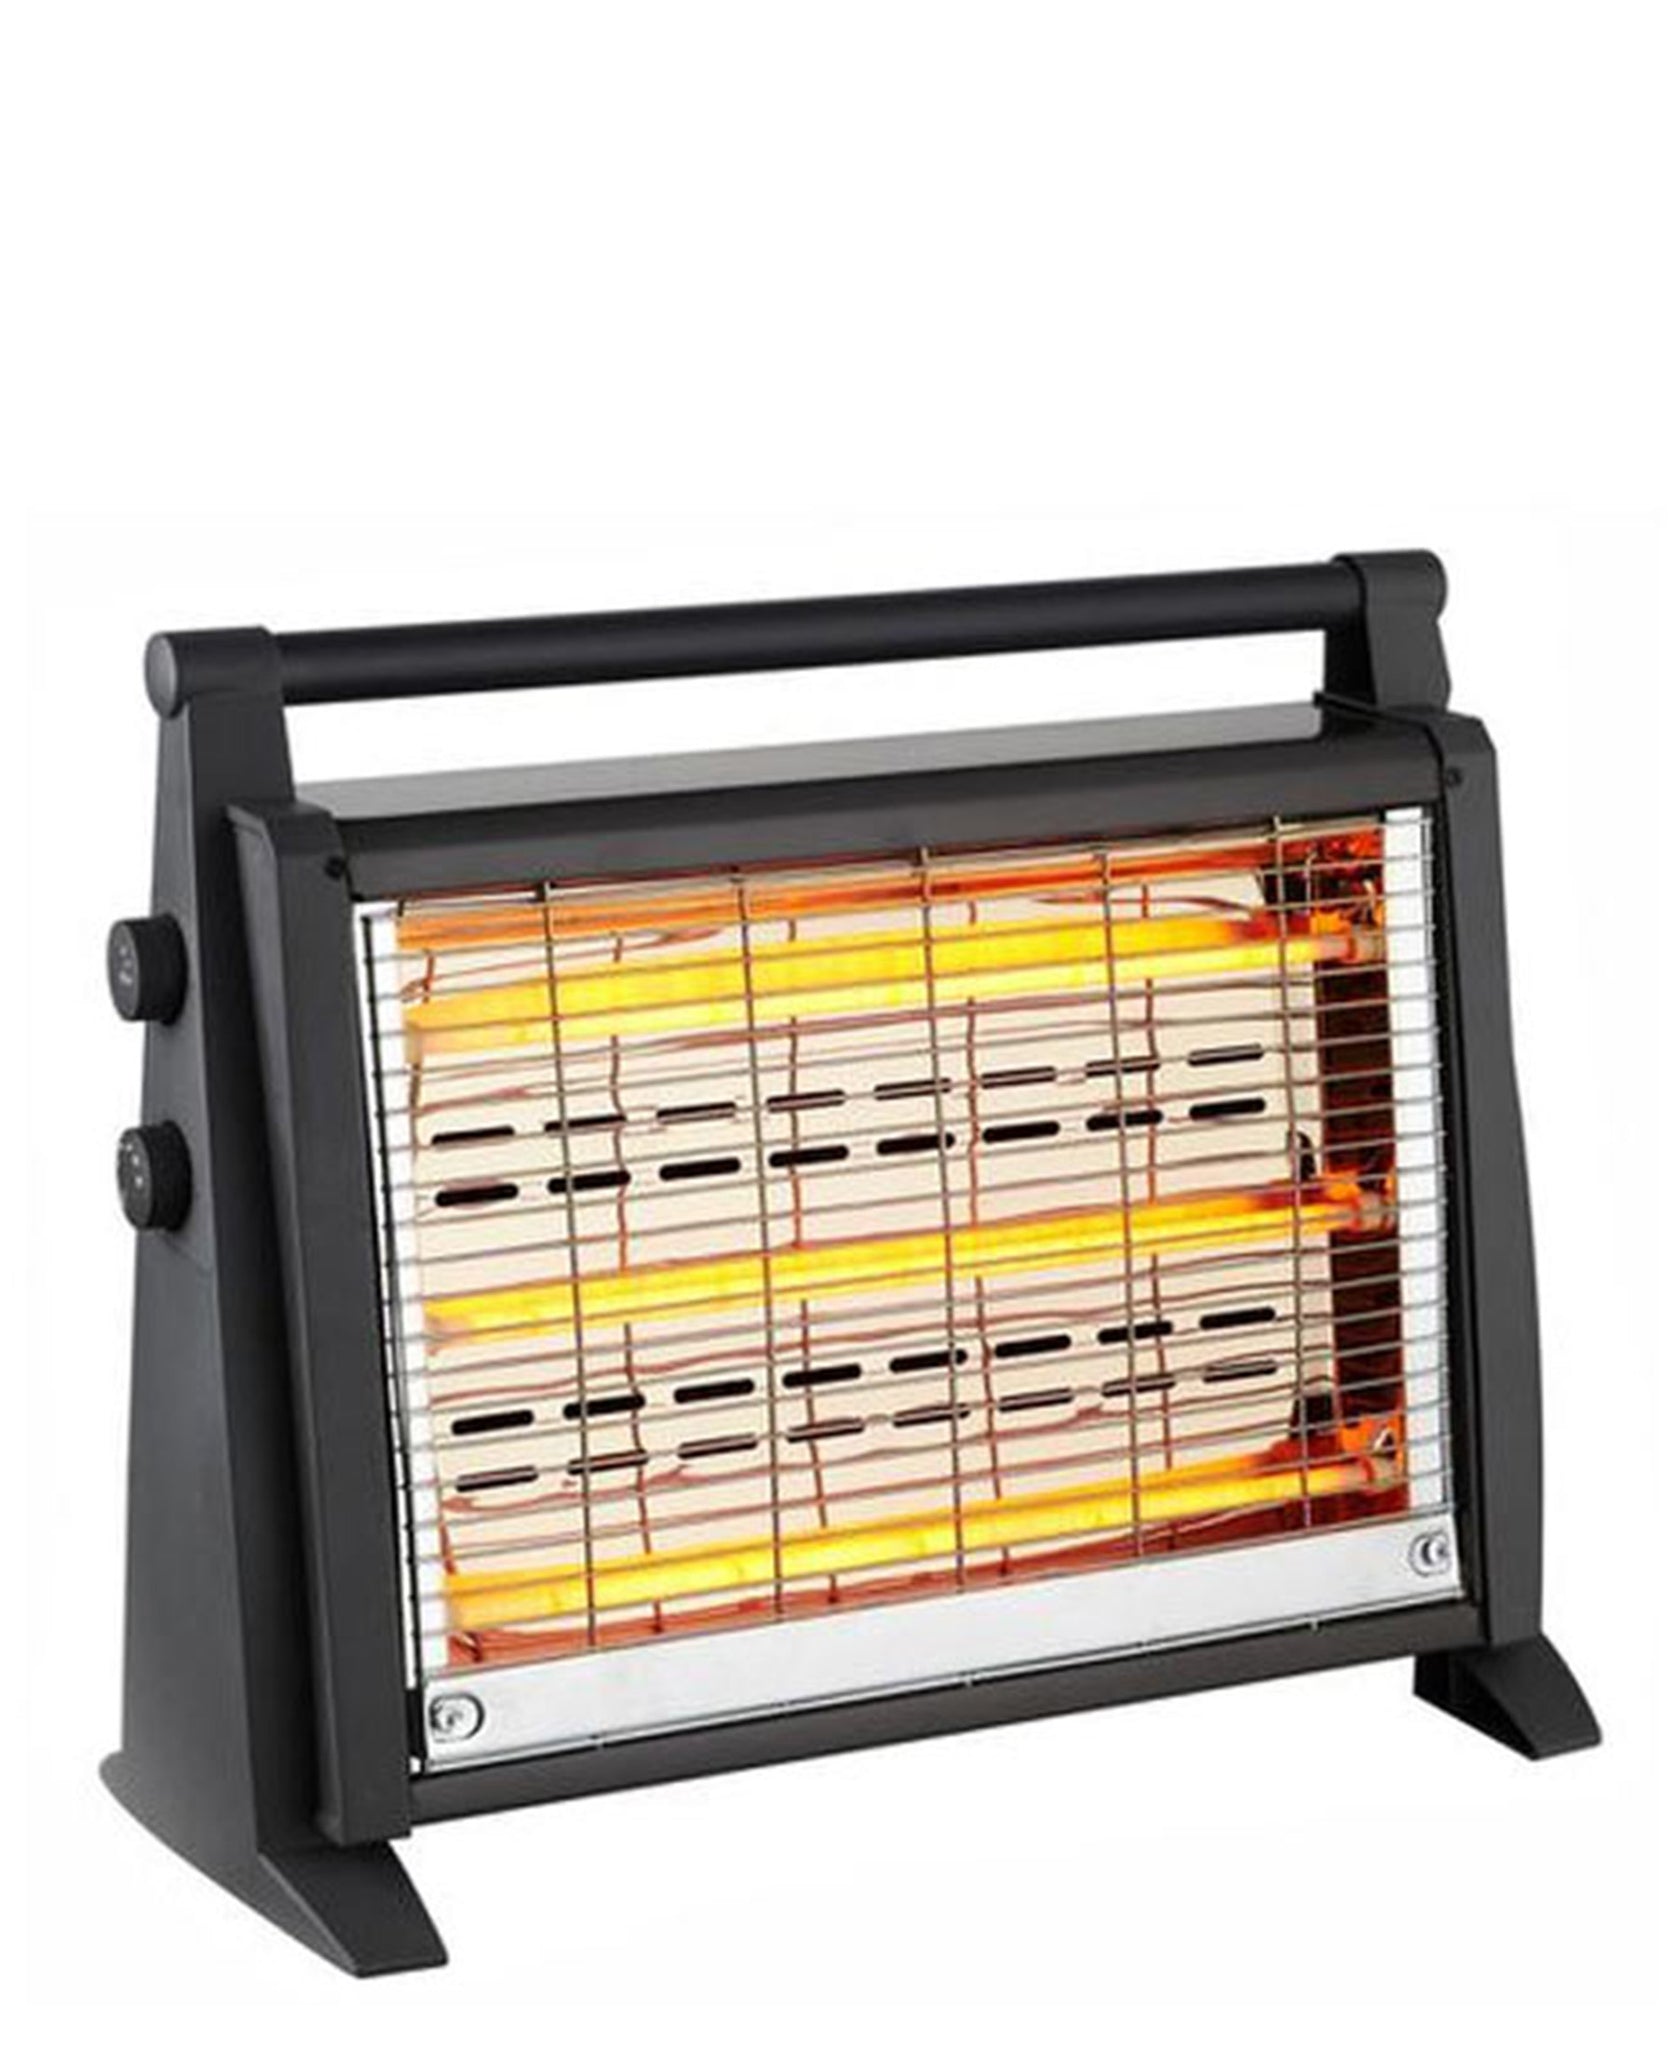 Goldair Quartz Heater GQH-004 - Black